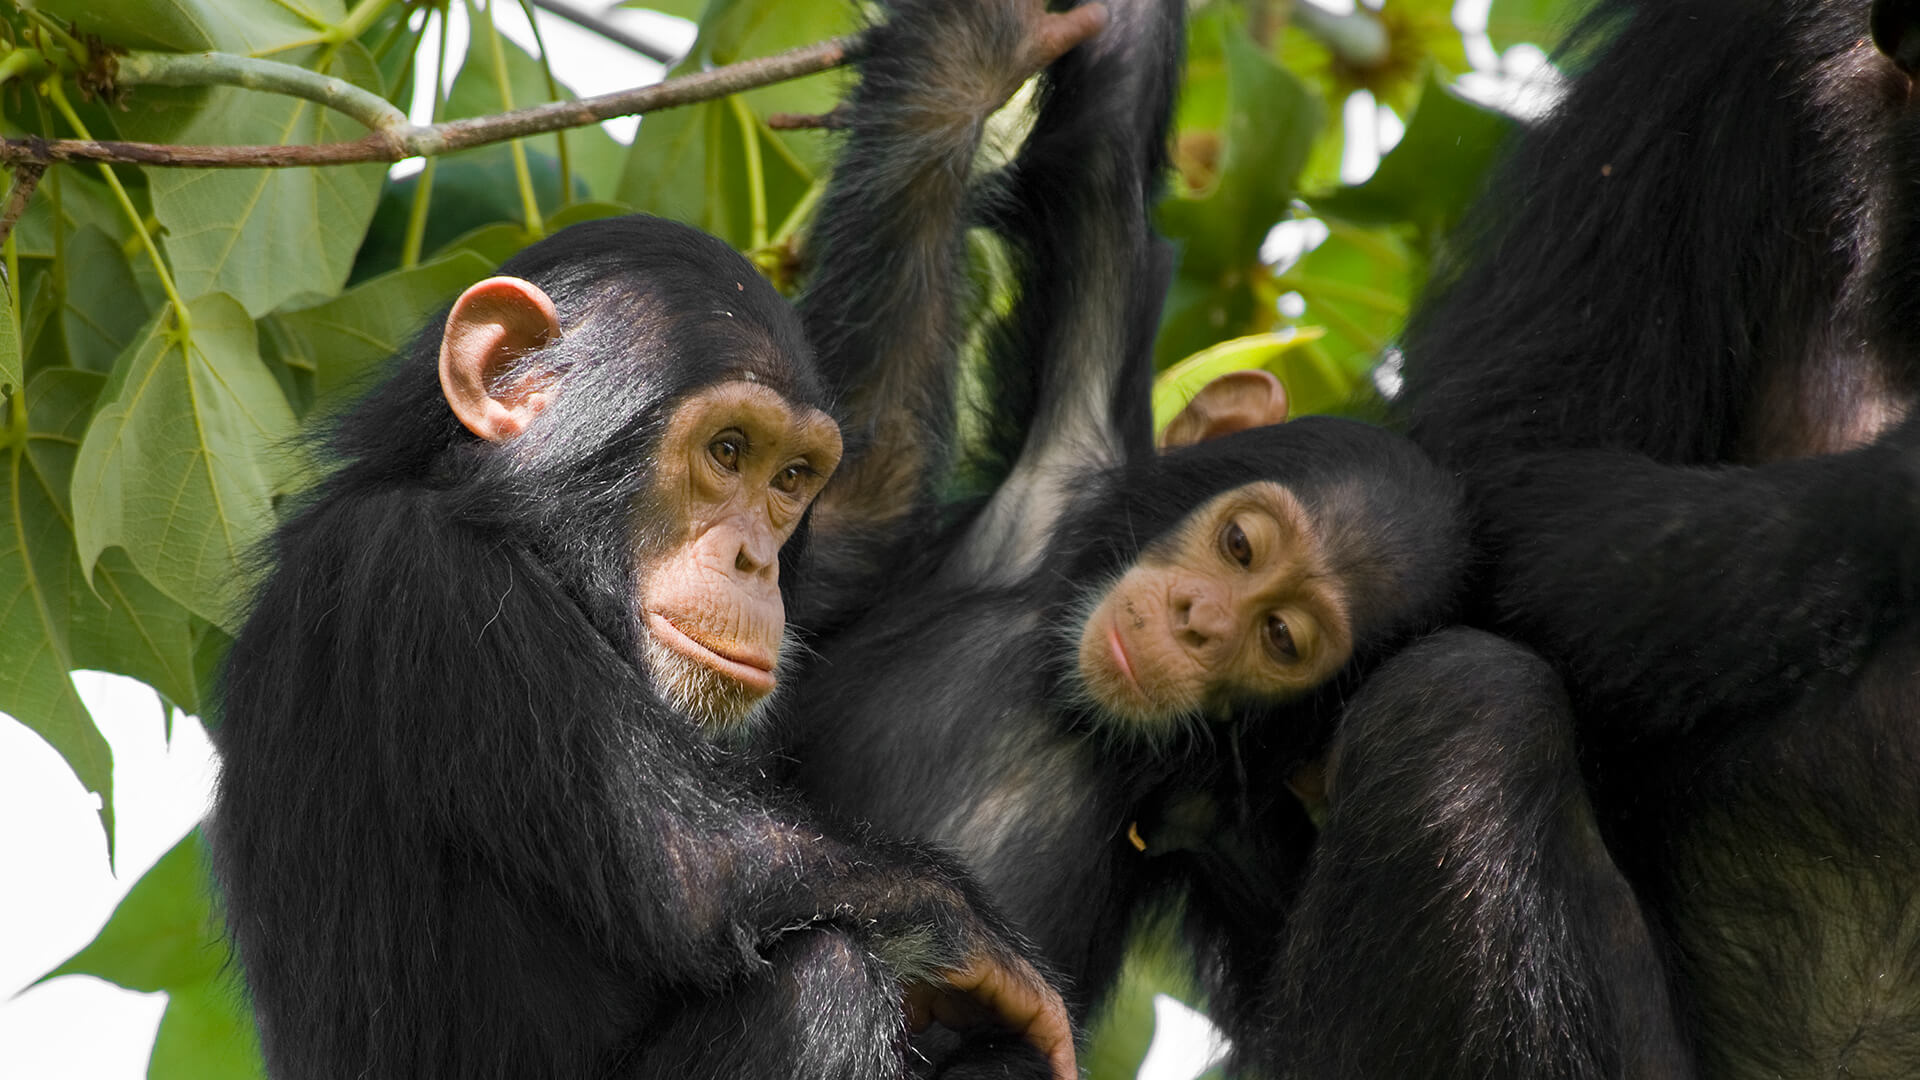 آیا شامپانزه ها نظریه ذهن دارند؟